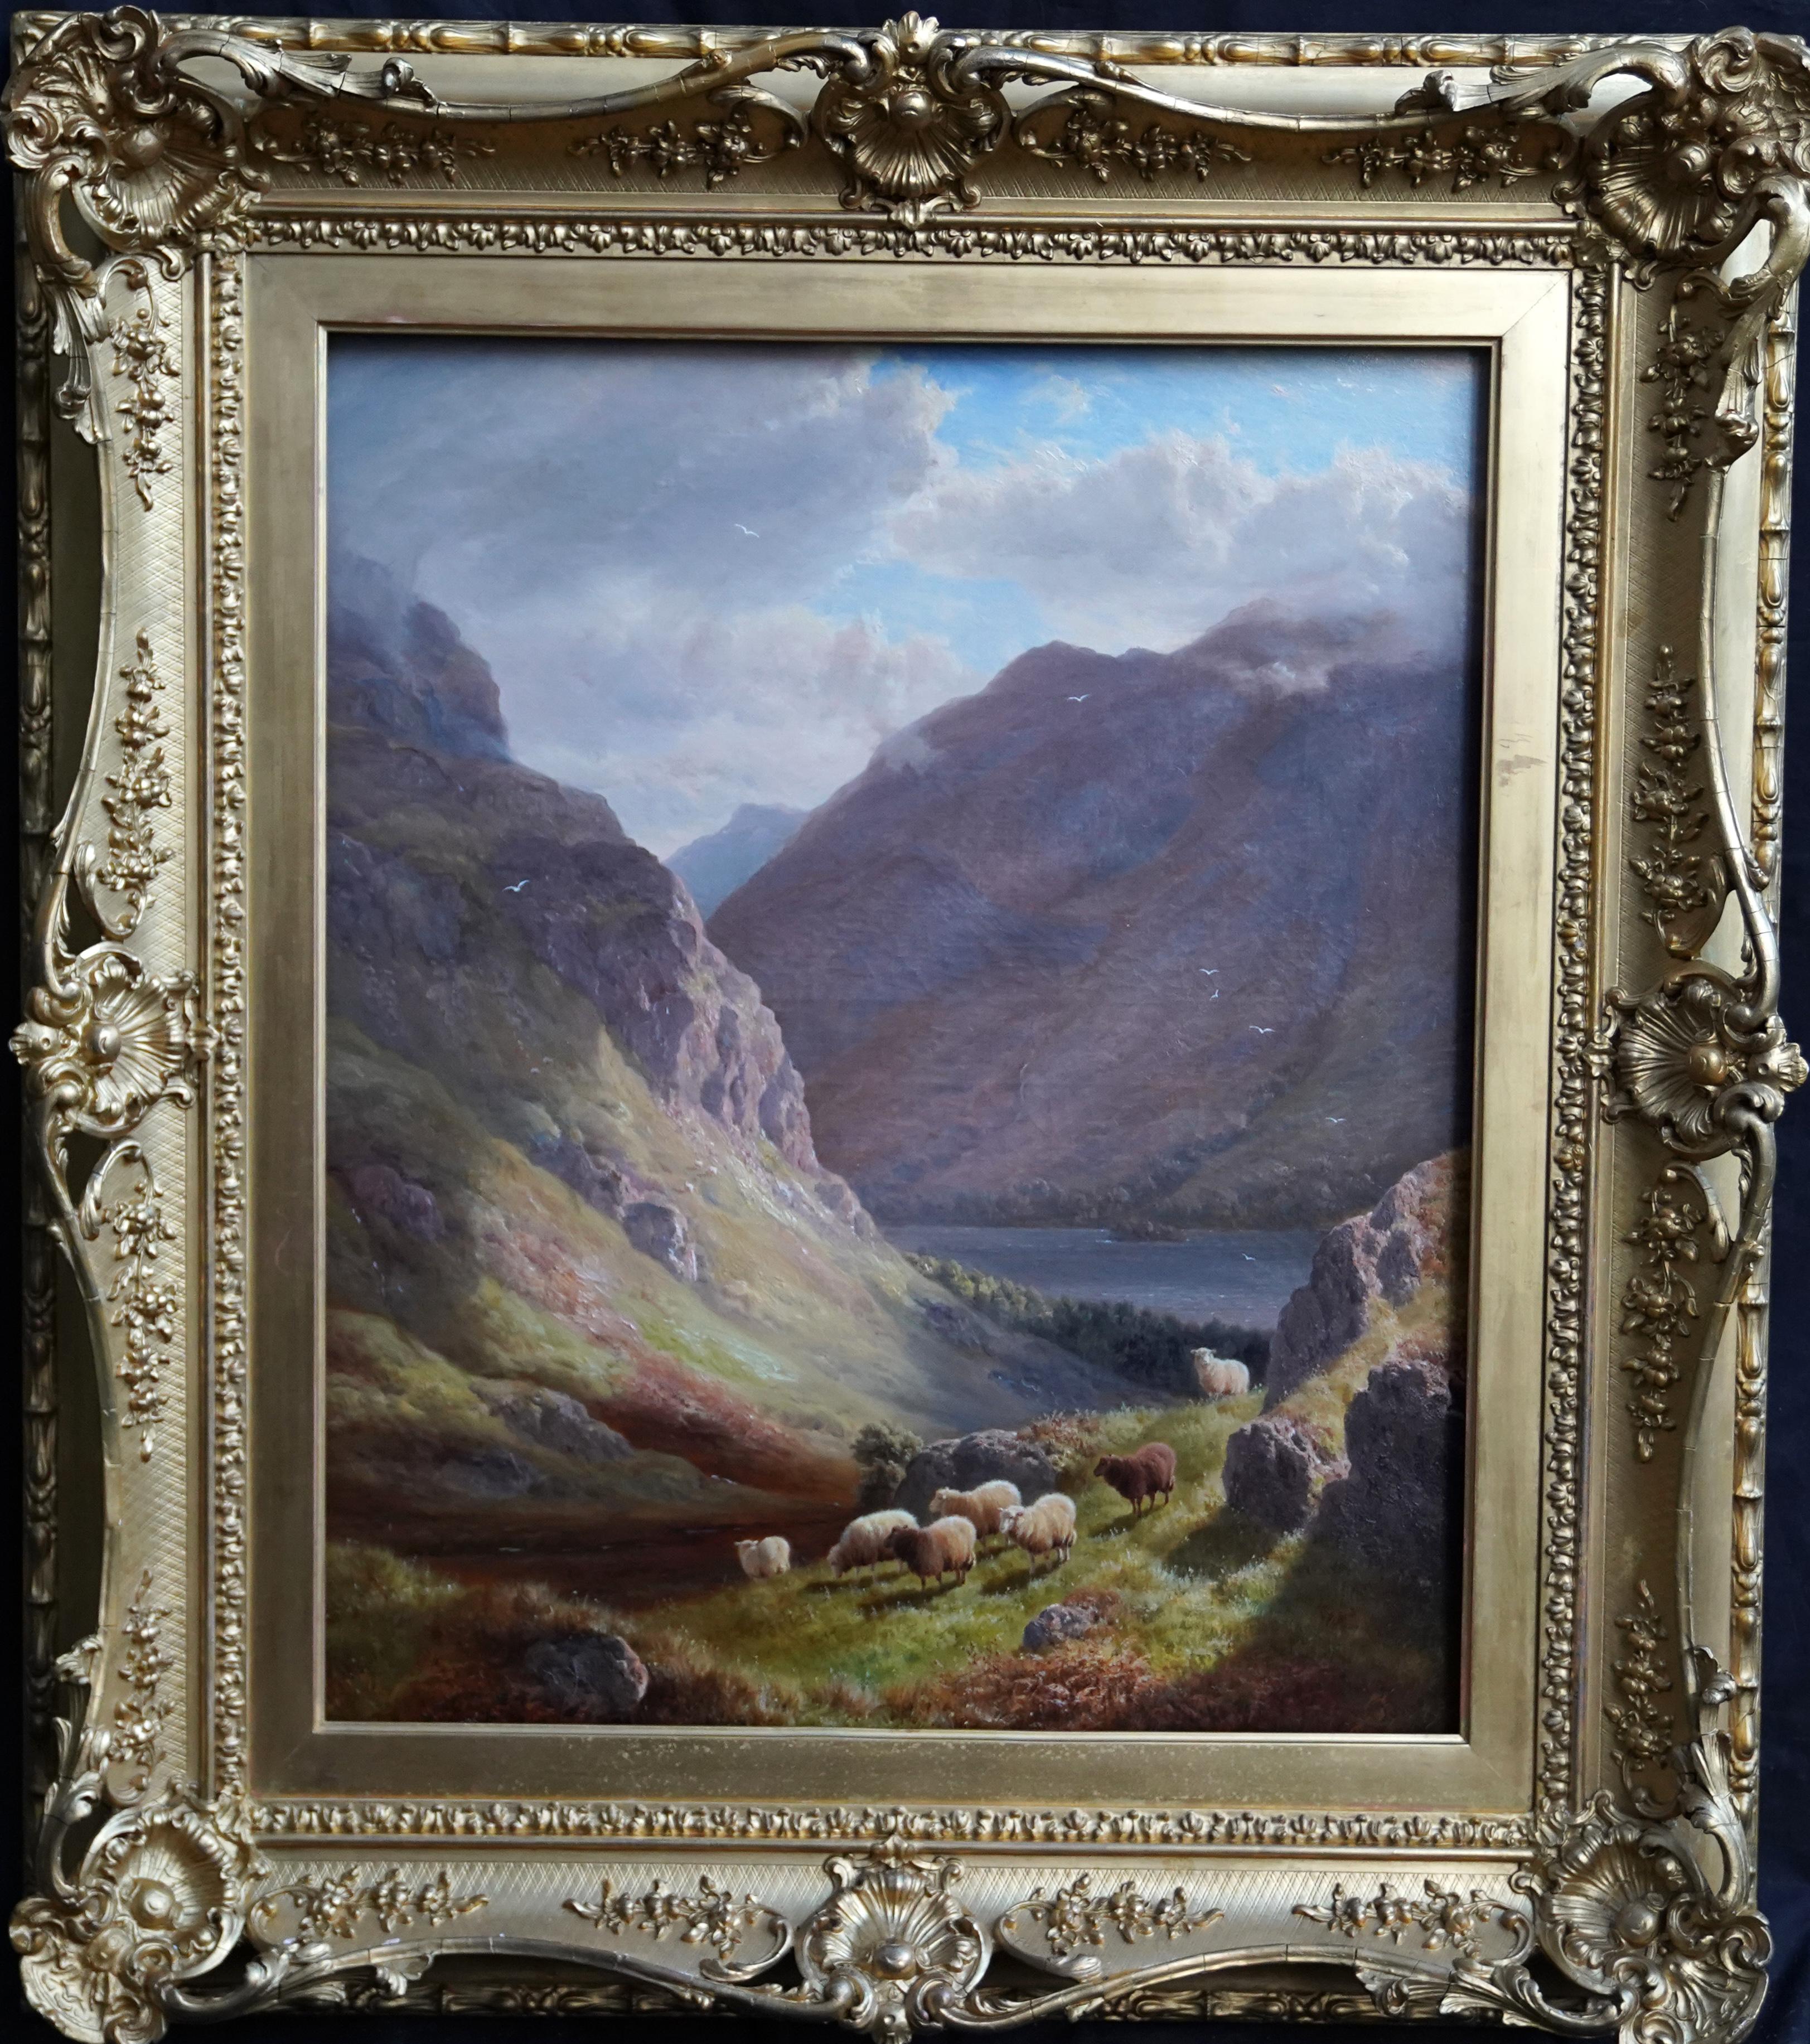 Derwent Water Lake District Landscape - British Victorian art oil painting